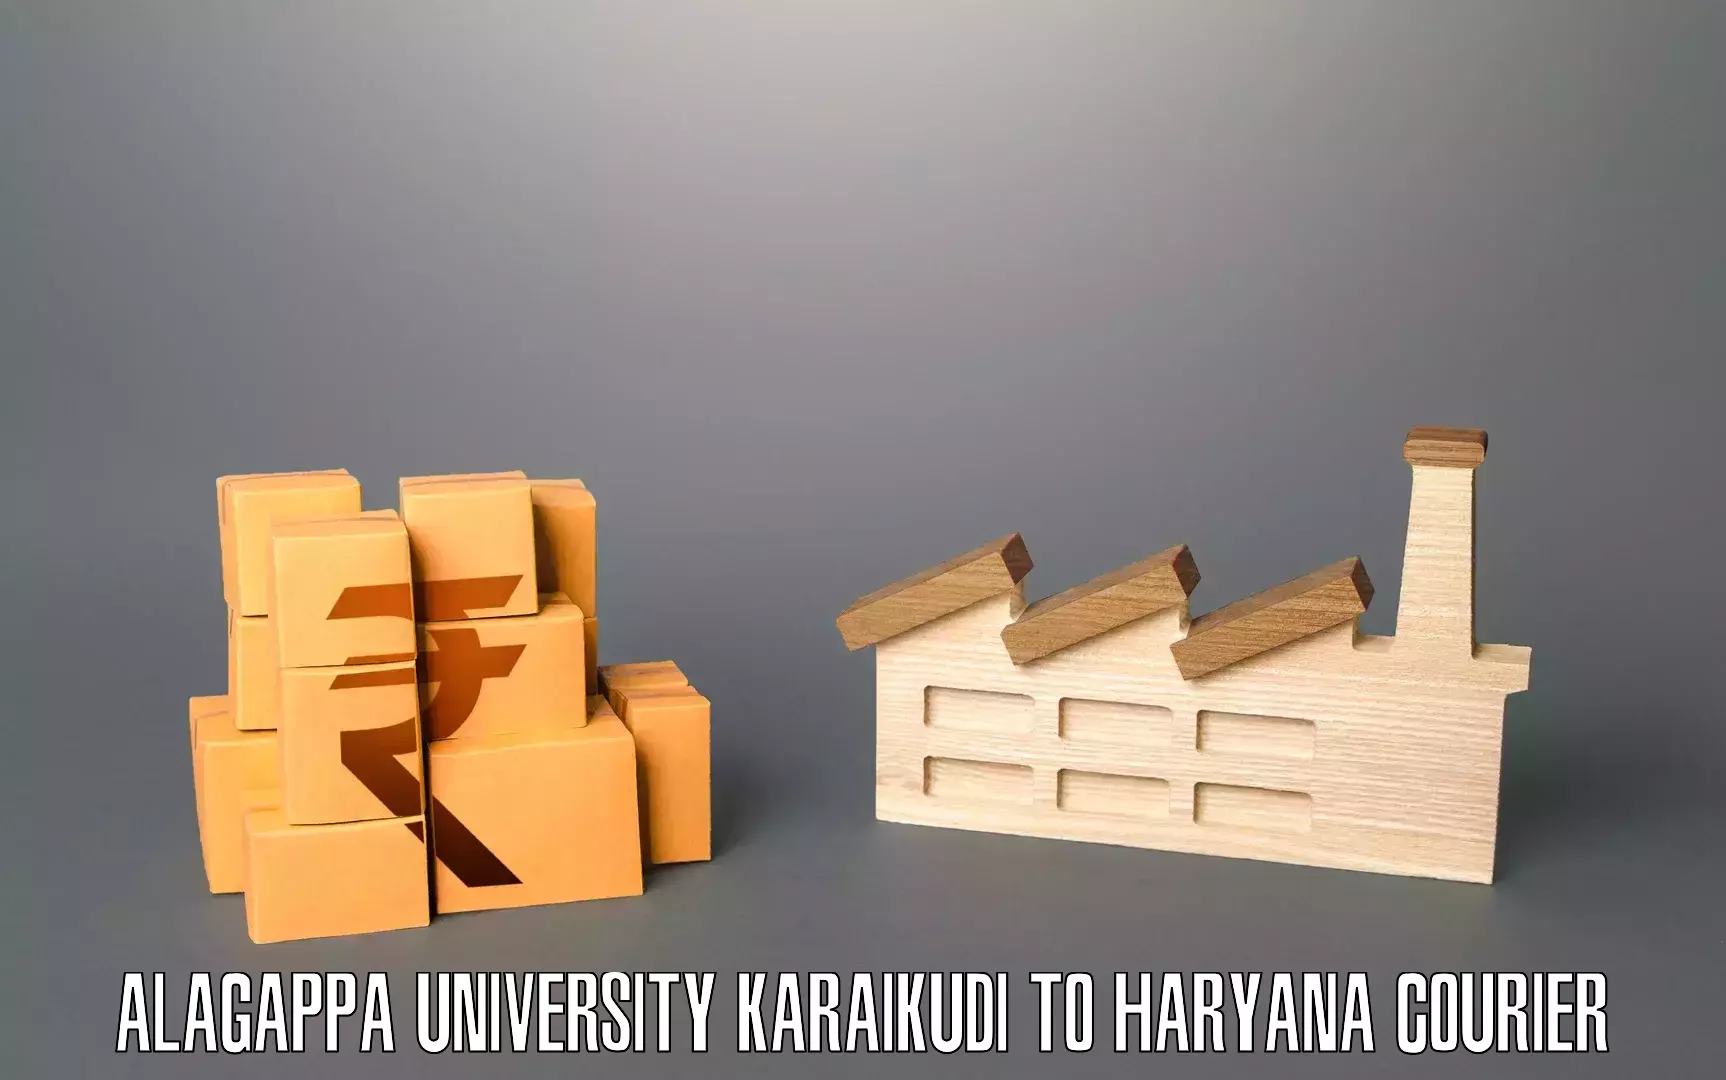 Professional moving company Alagappa University Karaikudi to Mandi Dabwali